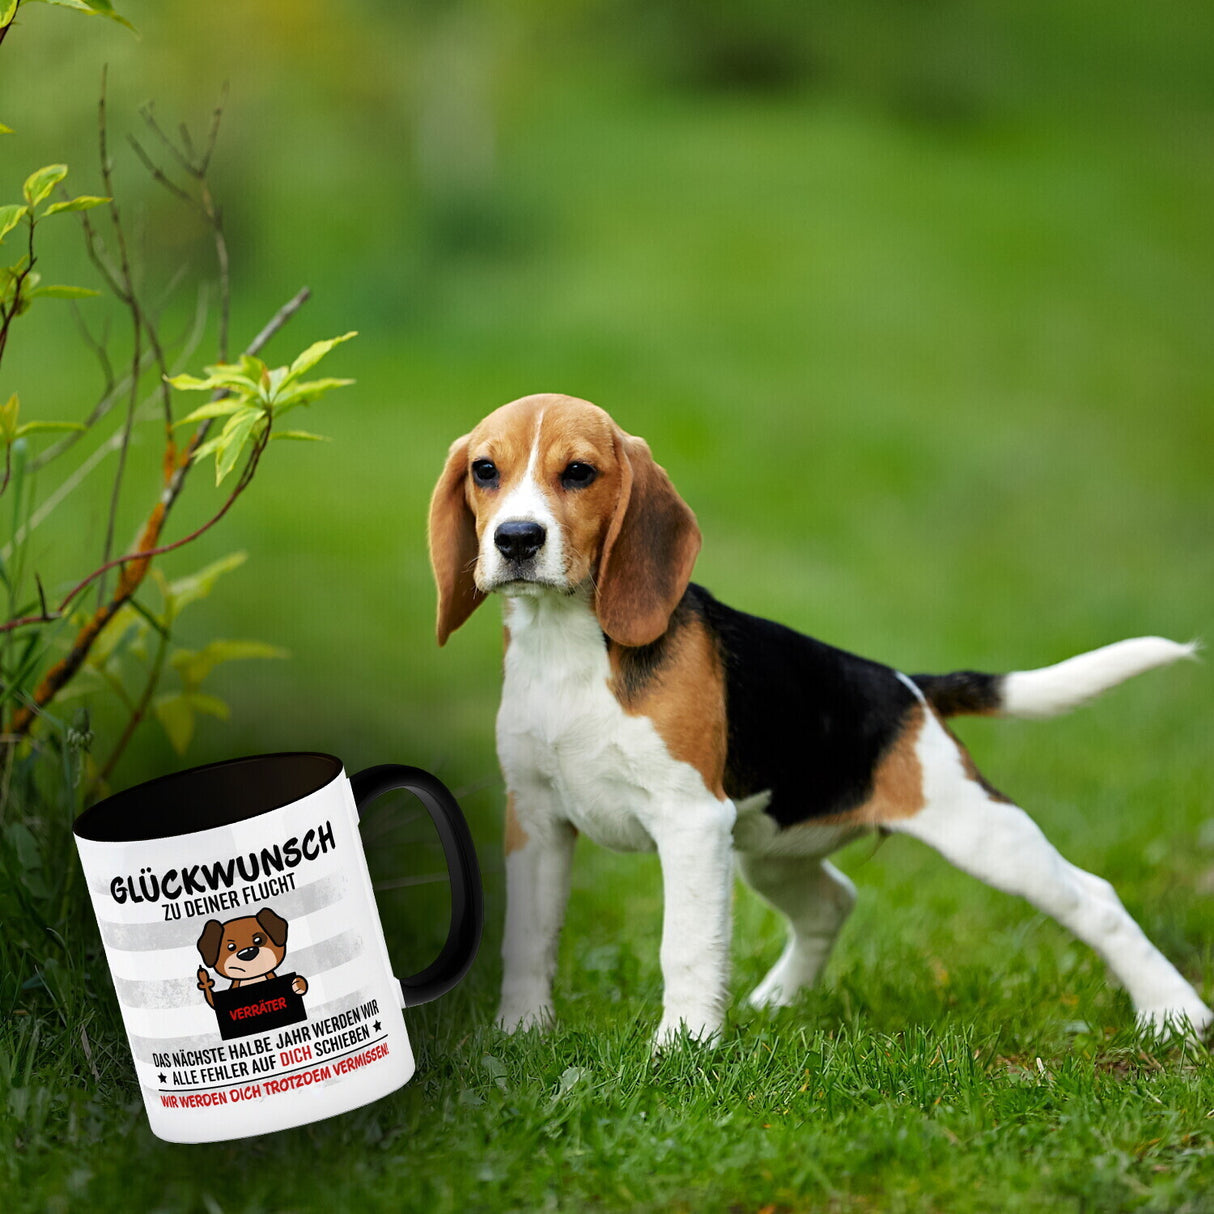 Glückwunsch zur Flucht, Verräter Mittelfinger Kaffeebecher mit Hund